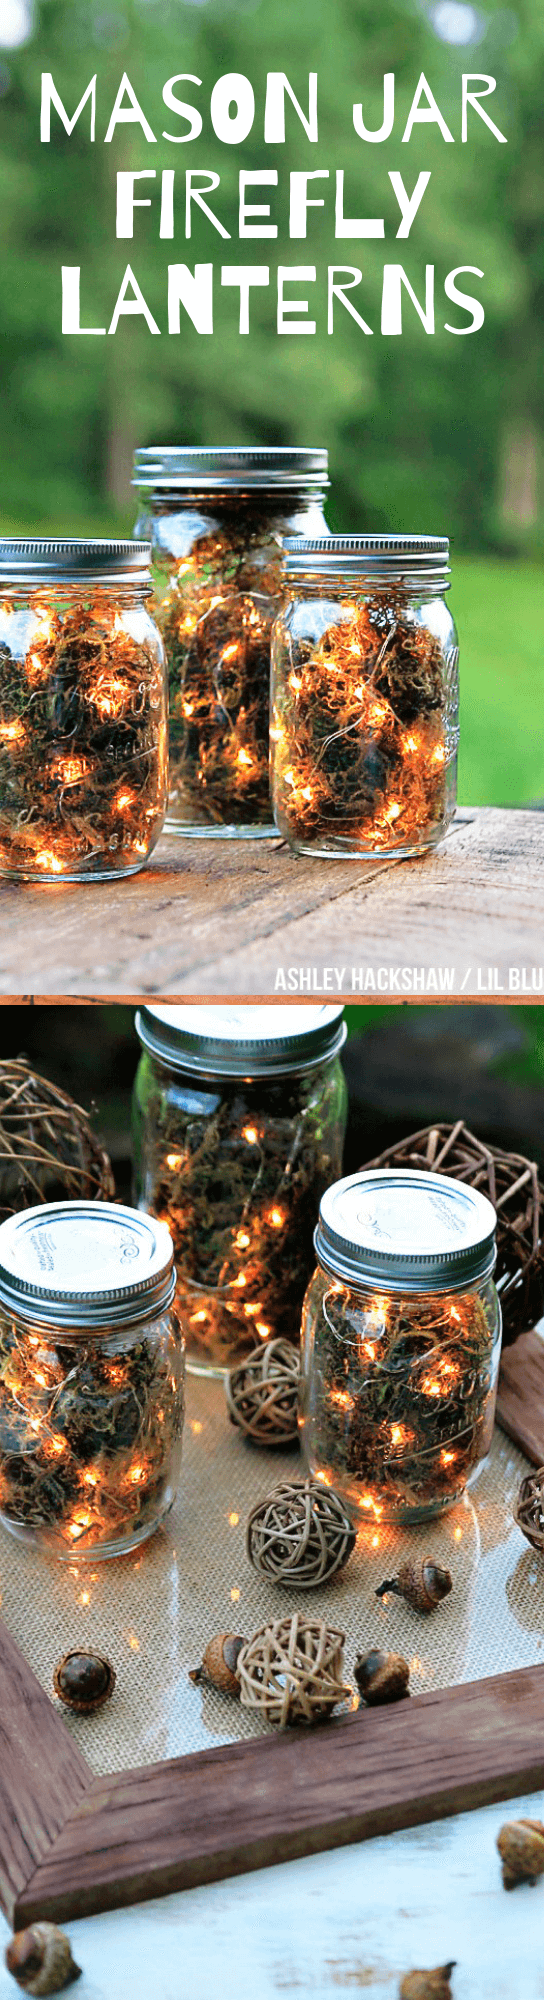 Mason Jar Firefly Lanterns